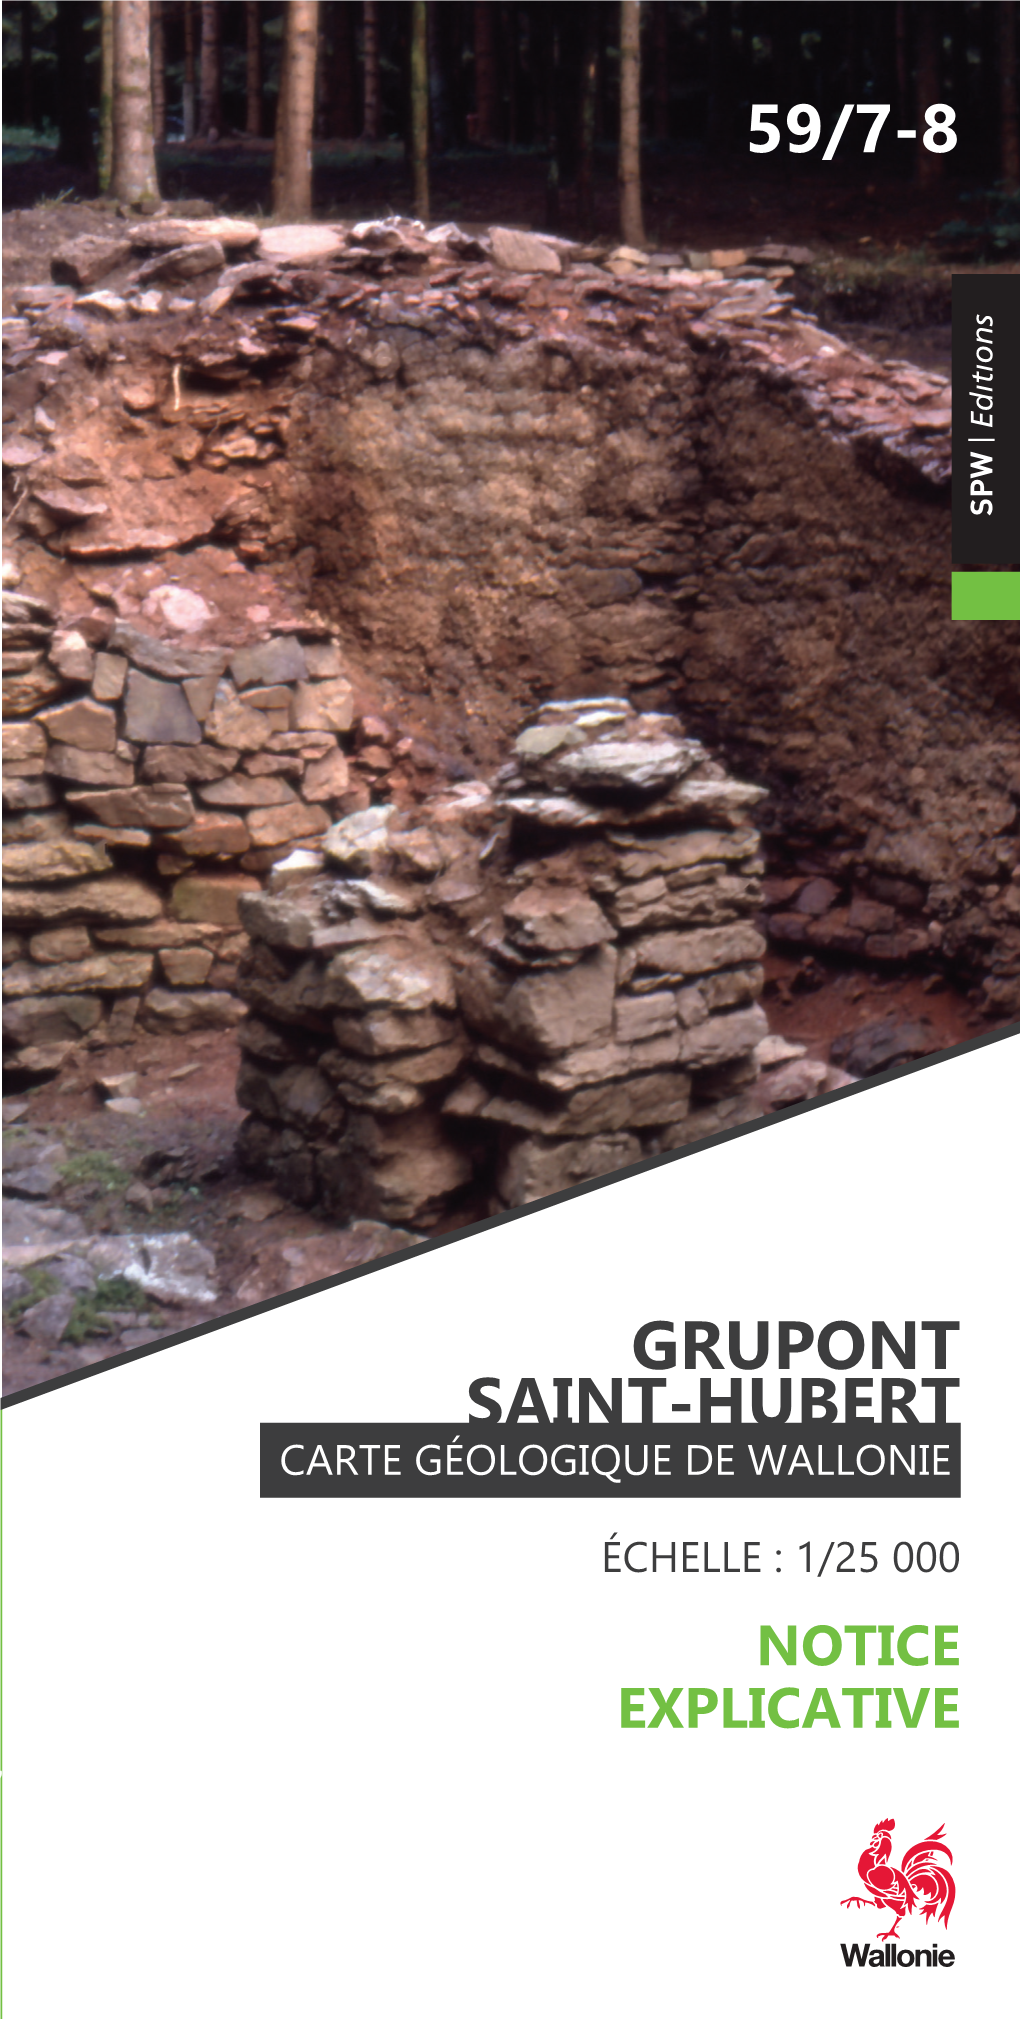 Grupont Saint-Hubert 59/7-8